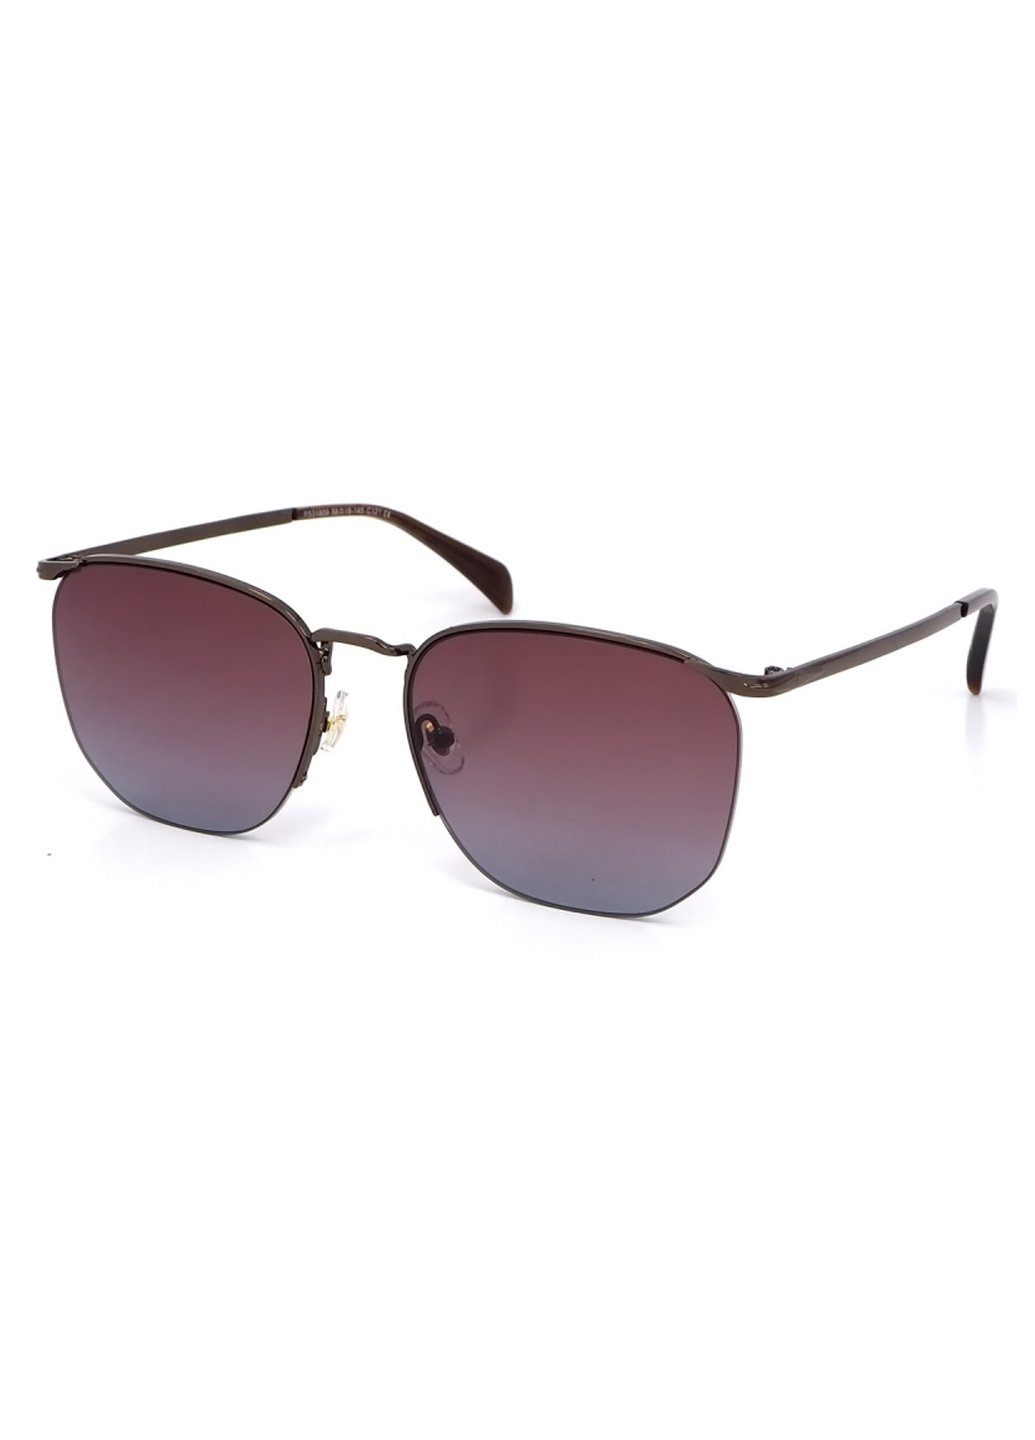 Купить Женские солнцезащитные очки Merlini с поляризацией S31809P 117018 - Коричневый в интернет-магазине